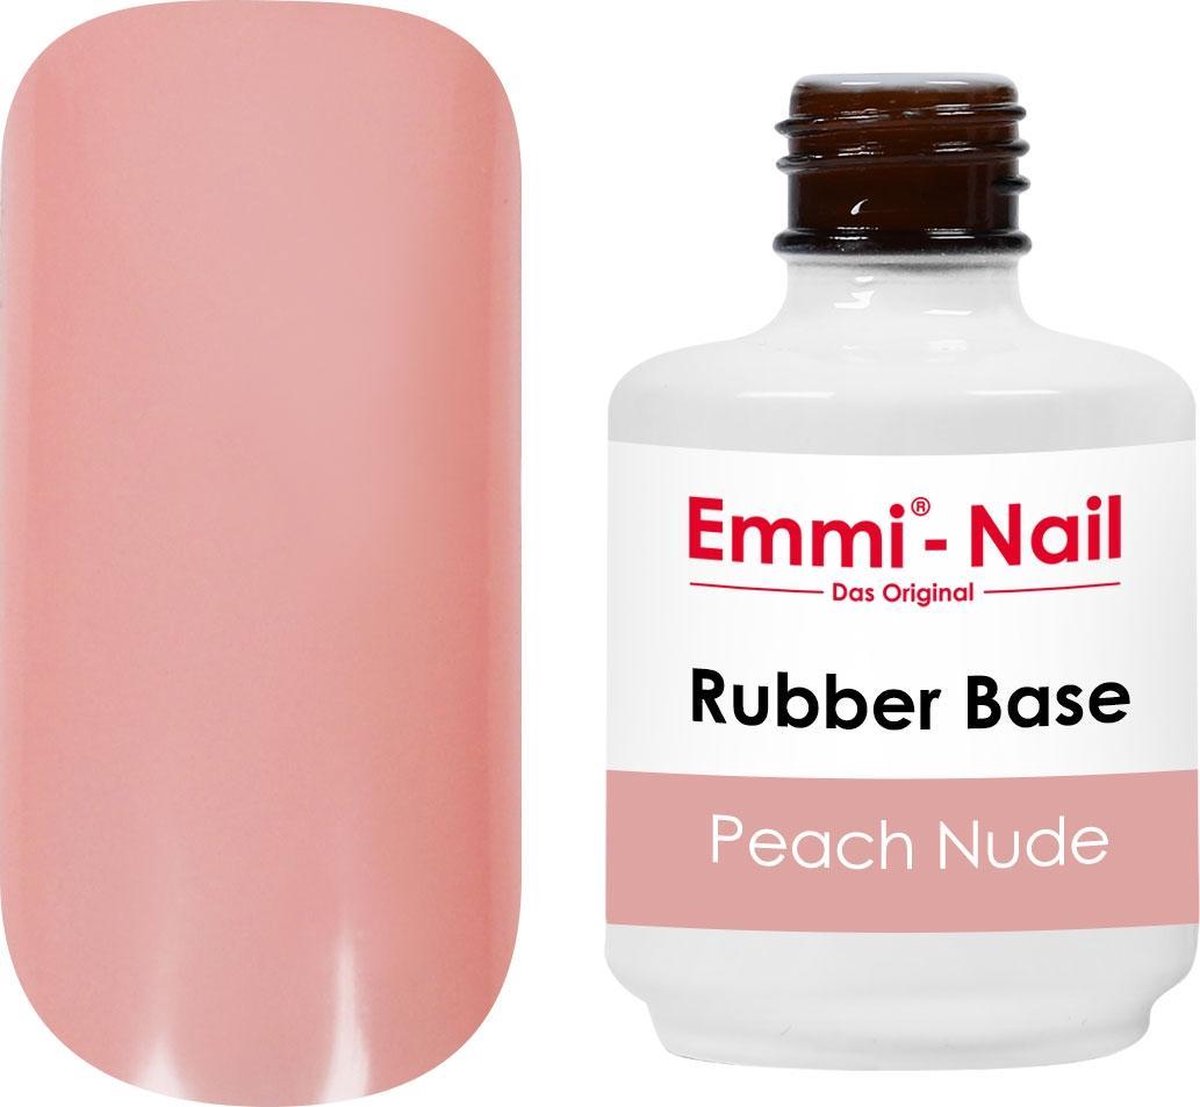 Emmi-Nail Rubber Base Peach Nude, 15 ml